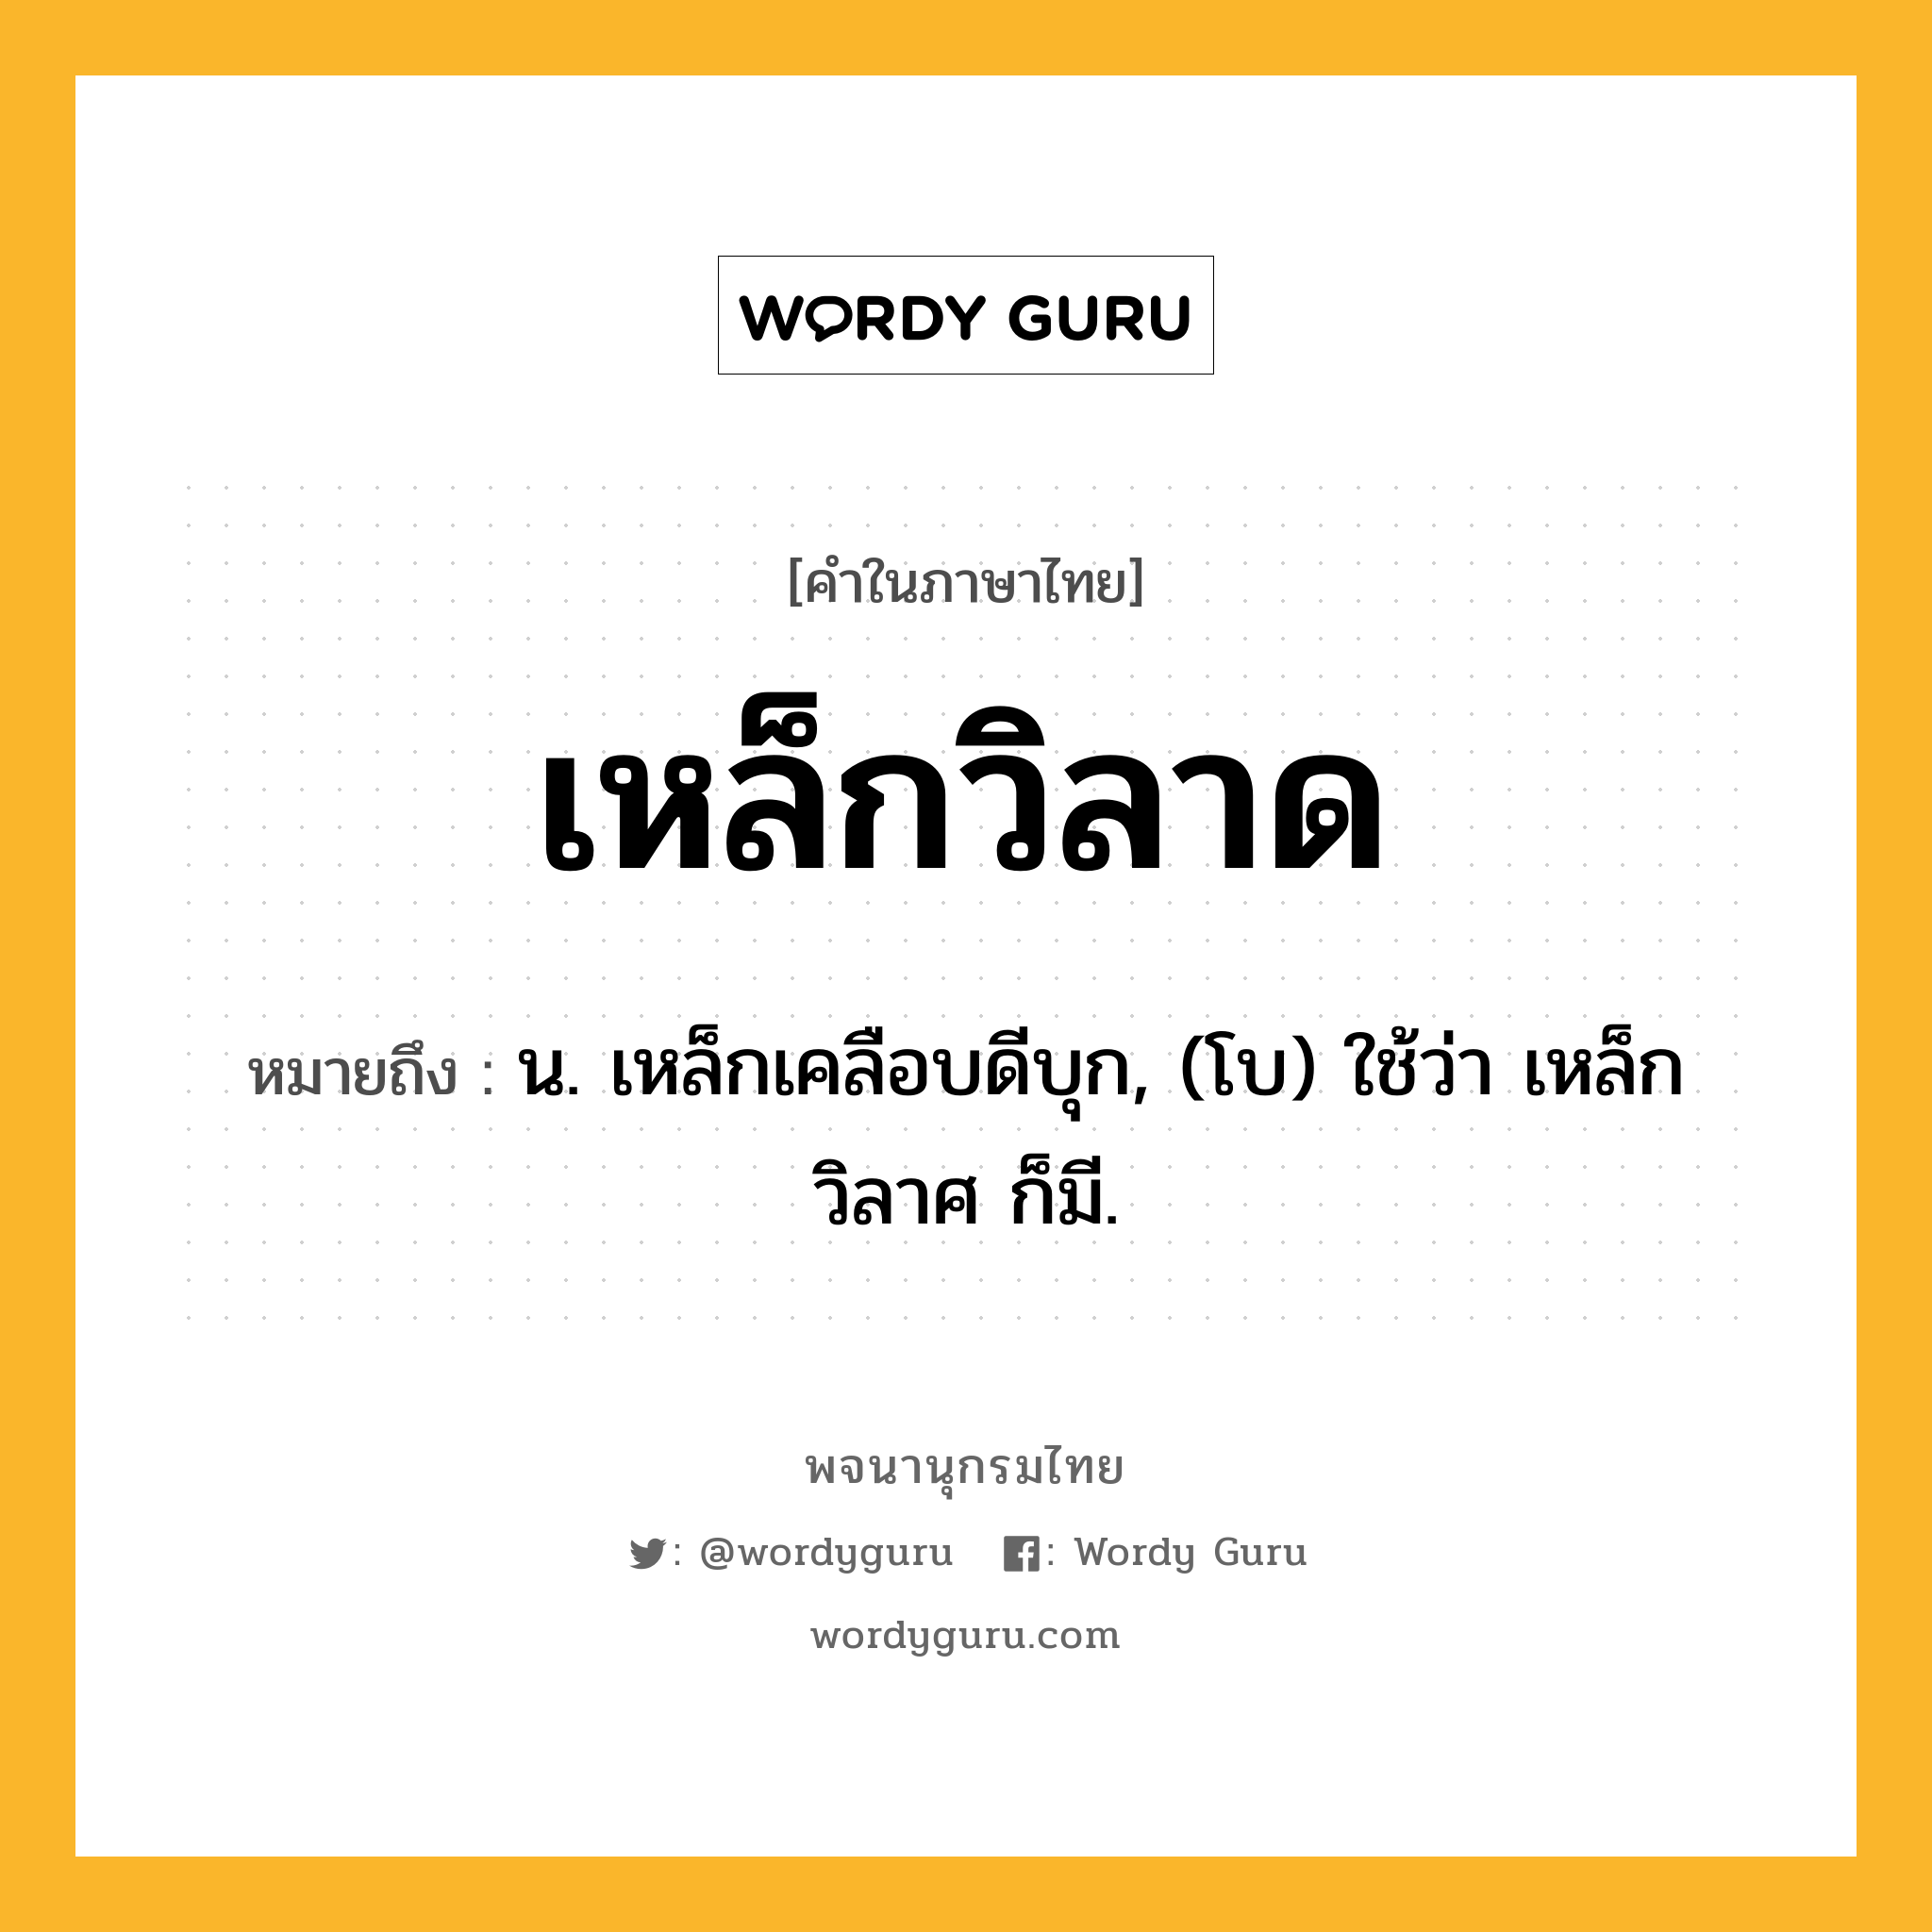 เหล็กวิลาด หมายถึงอะไร?, คำในภาษาไทย เหล็กวิลาด หมายถึง น. เหล็กเคลือบดีบุก, (โบ) ใช้ว่า เหล็กวิลาศ ก็มี.